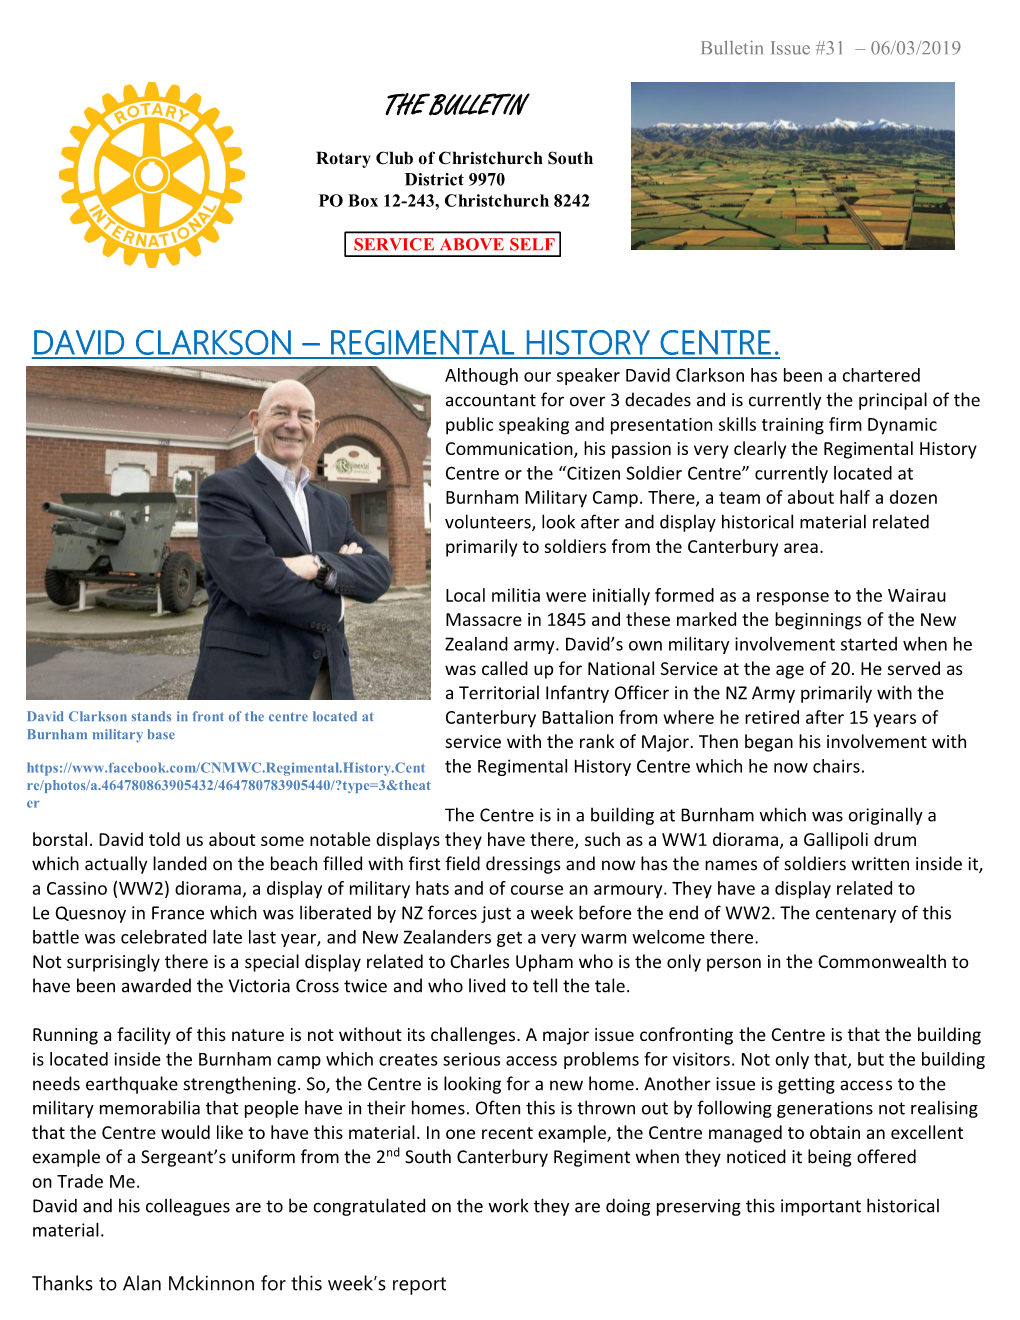 David Clarkson – Regimental History Centre